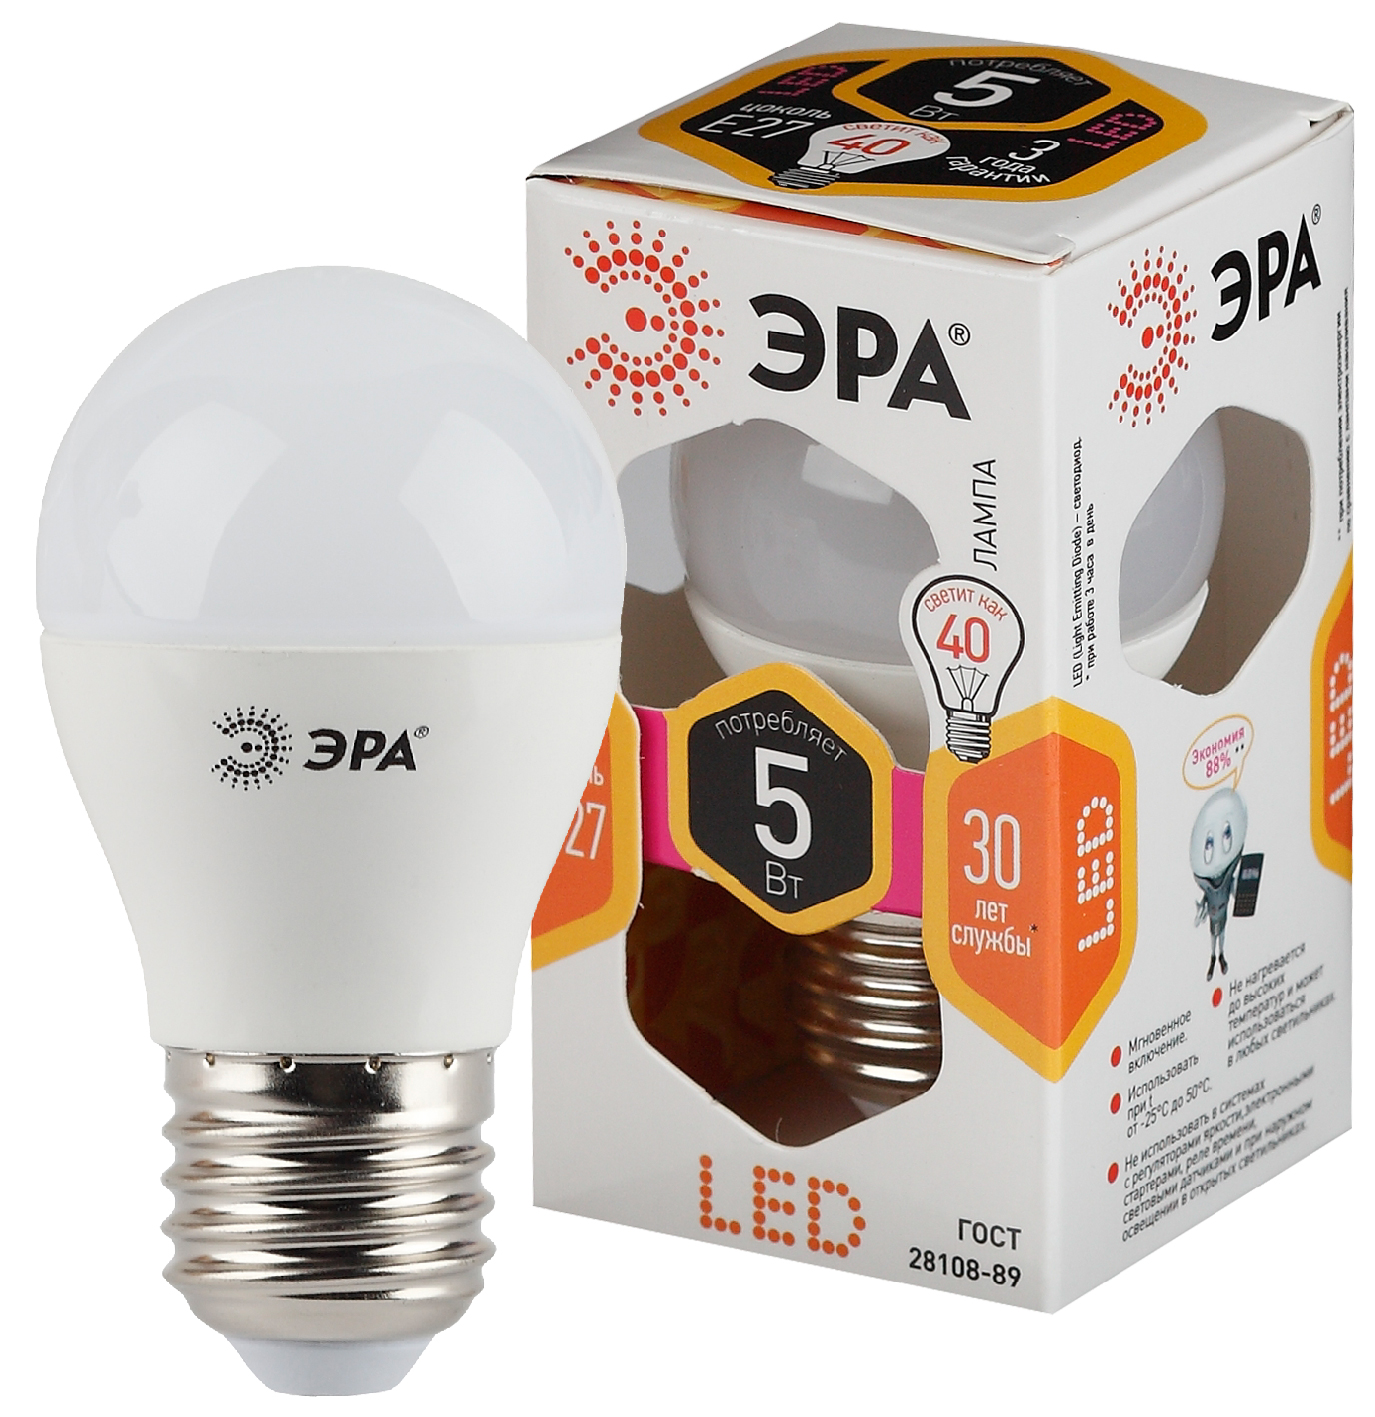 LED P45-5W-827-E27 ЭРА (диод, шар, 5Вт, тепл, E27) (10/100/3600)